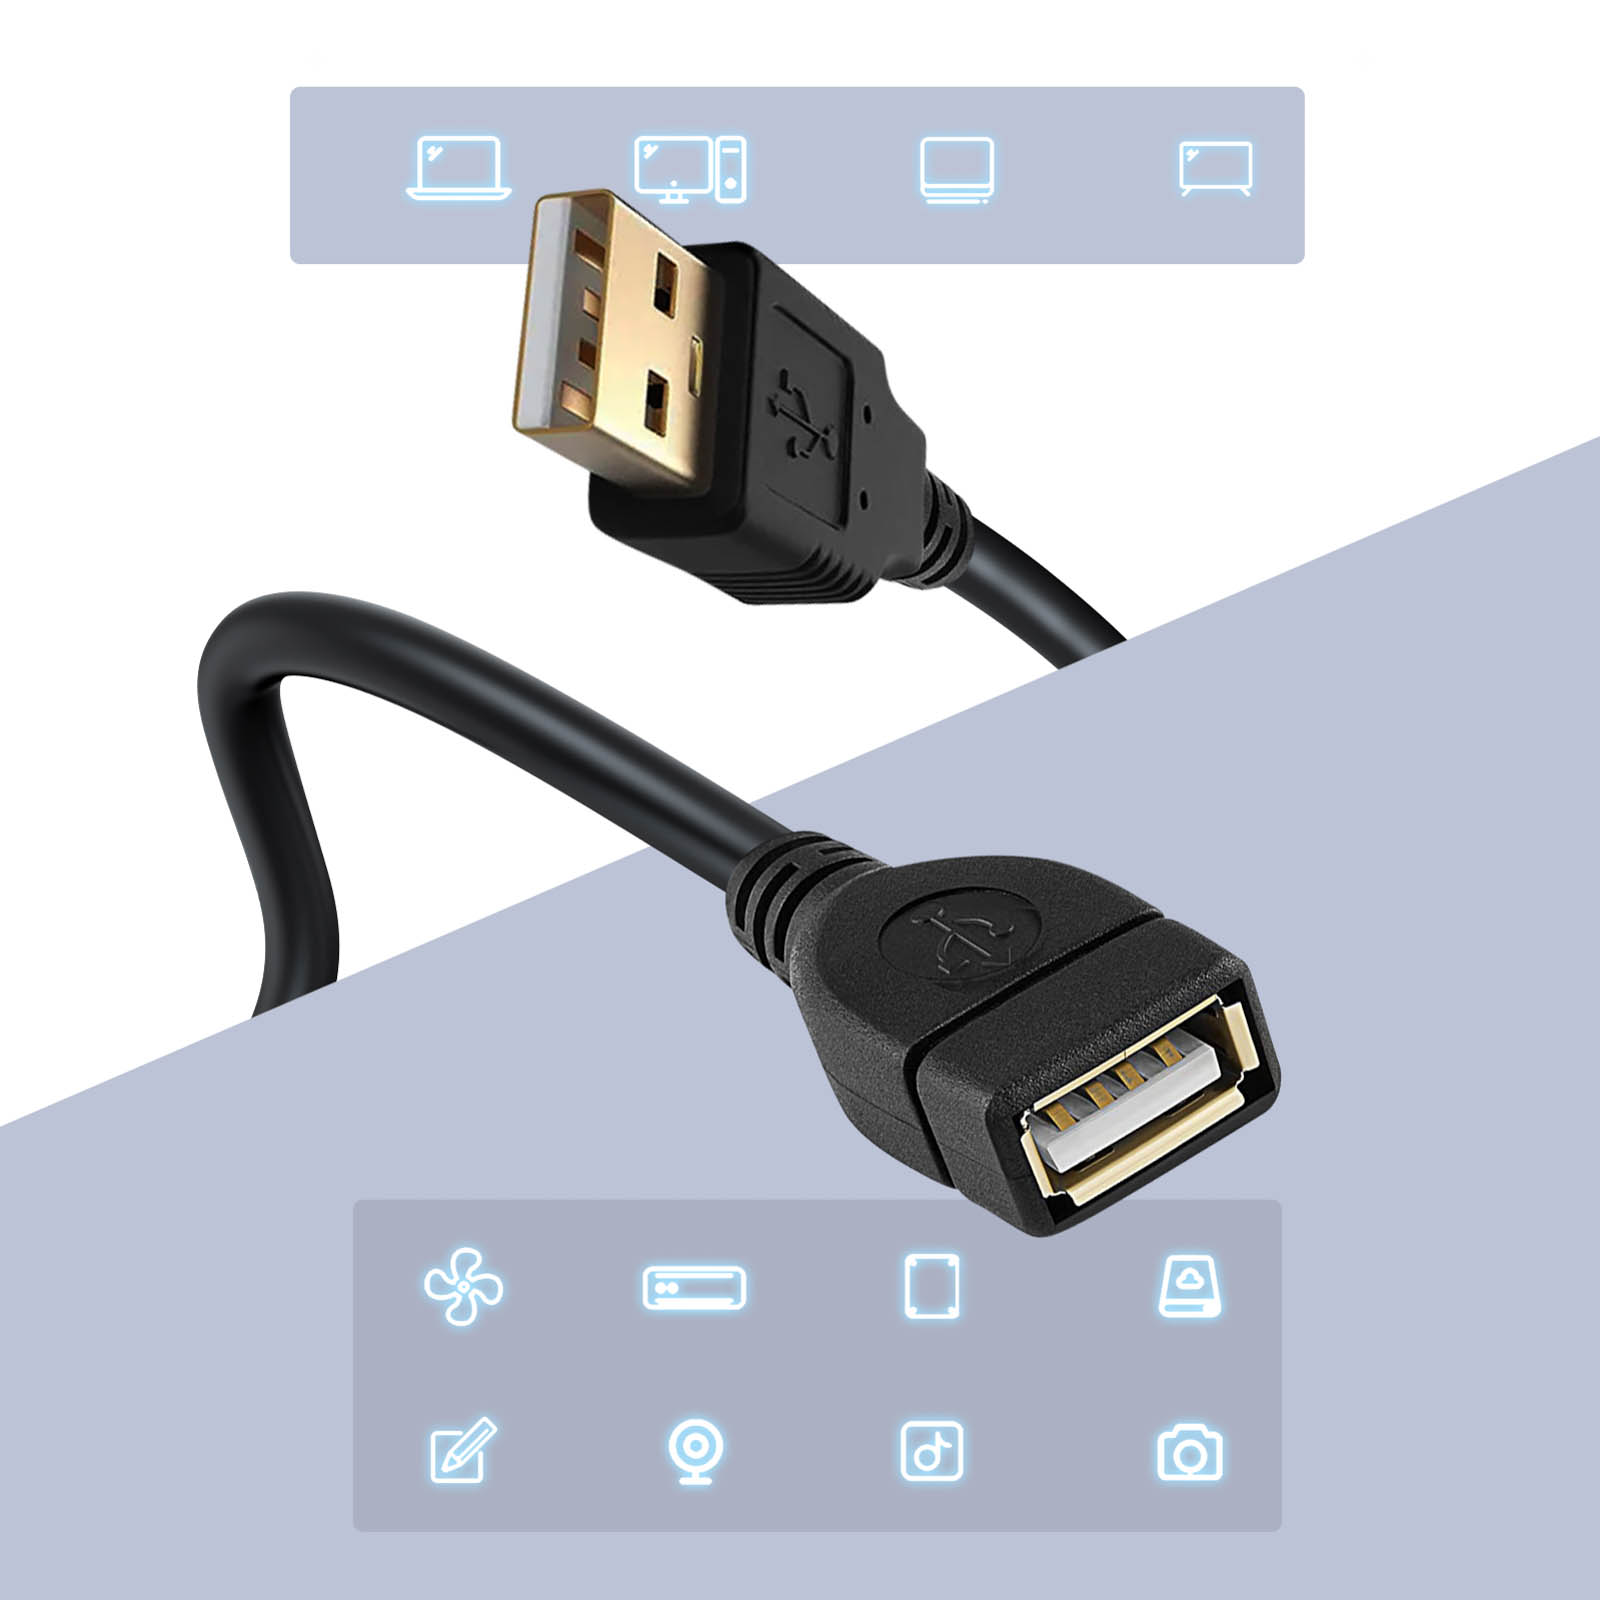 Alargador USB, Transferencia de Datos Rápida Cable de Extensión 5m